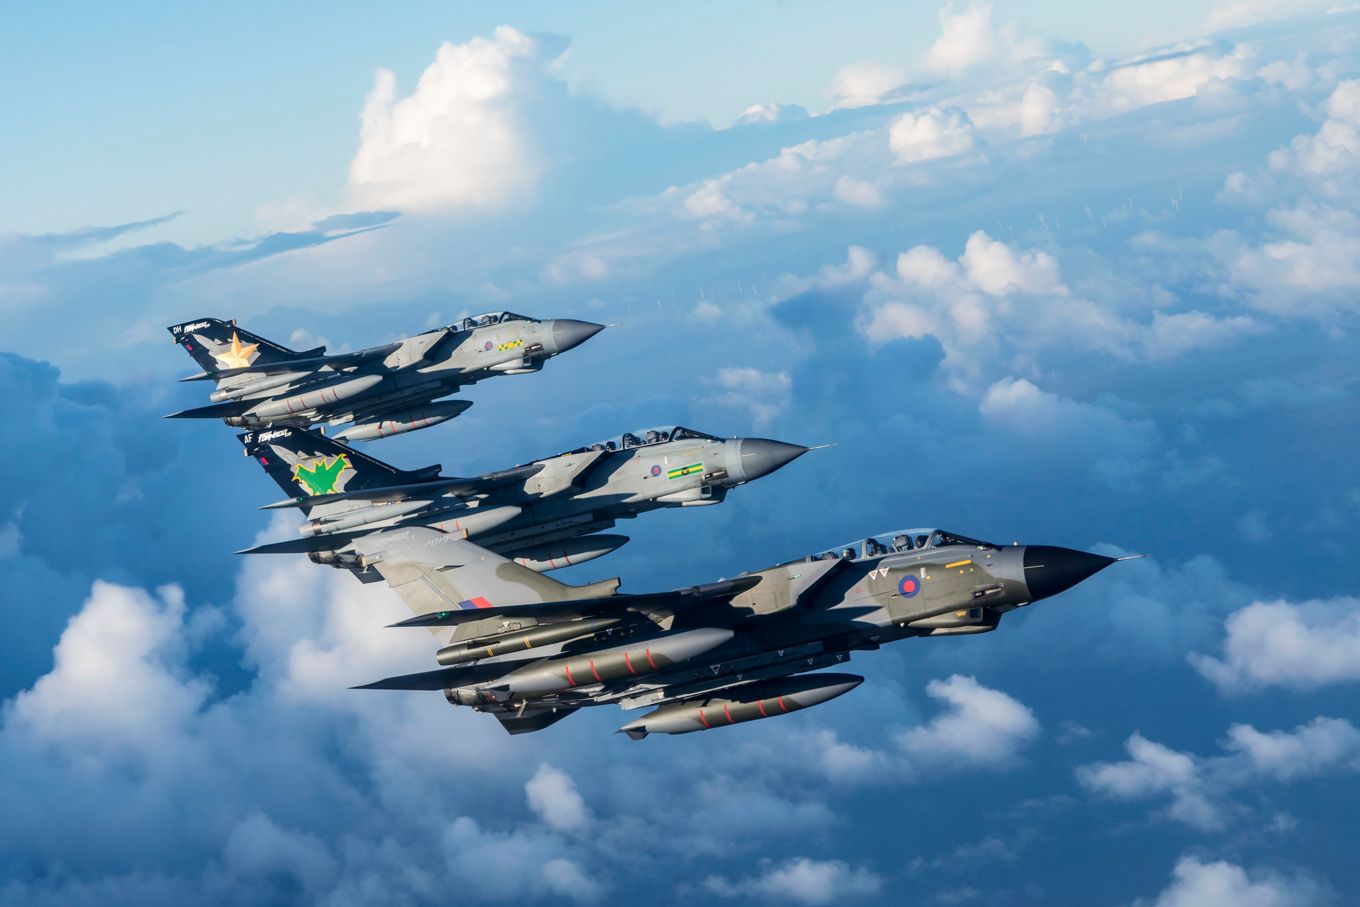 Истребители  Tornado 31 марта 2019 года будут сняты с вооружения ВВС Великобритании после 40 лет нахождения в строю (были приняты на вооружение в 1979 году) в качестве основы боевой мощи страны, в честь этого события ВВС Великобритании публикует «юбилейную» подборку  фотографий  Tornado в различных схемах окраски